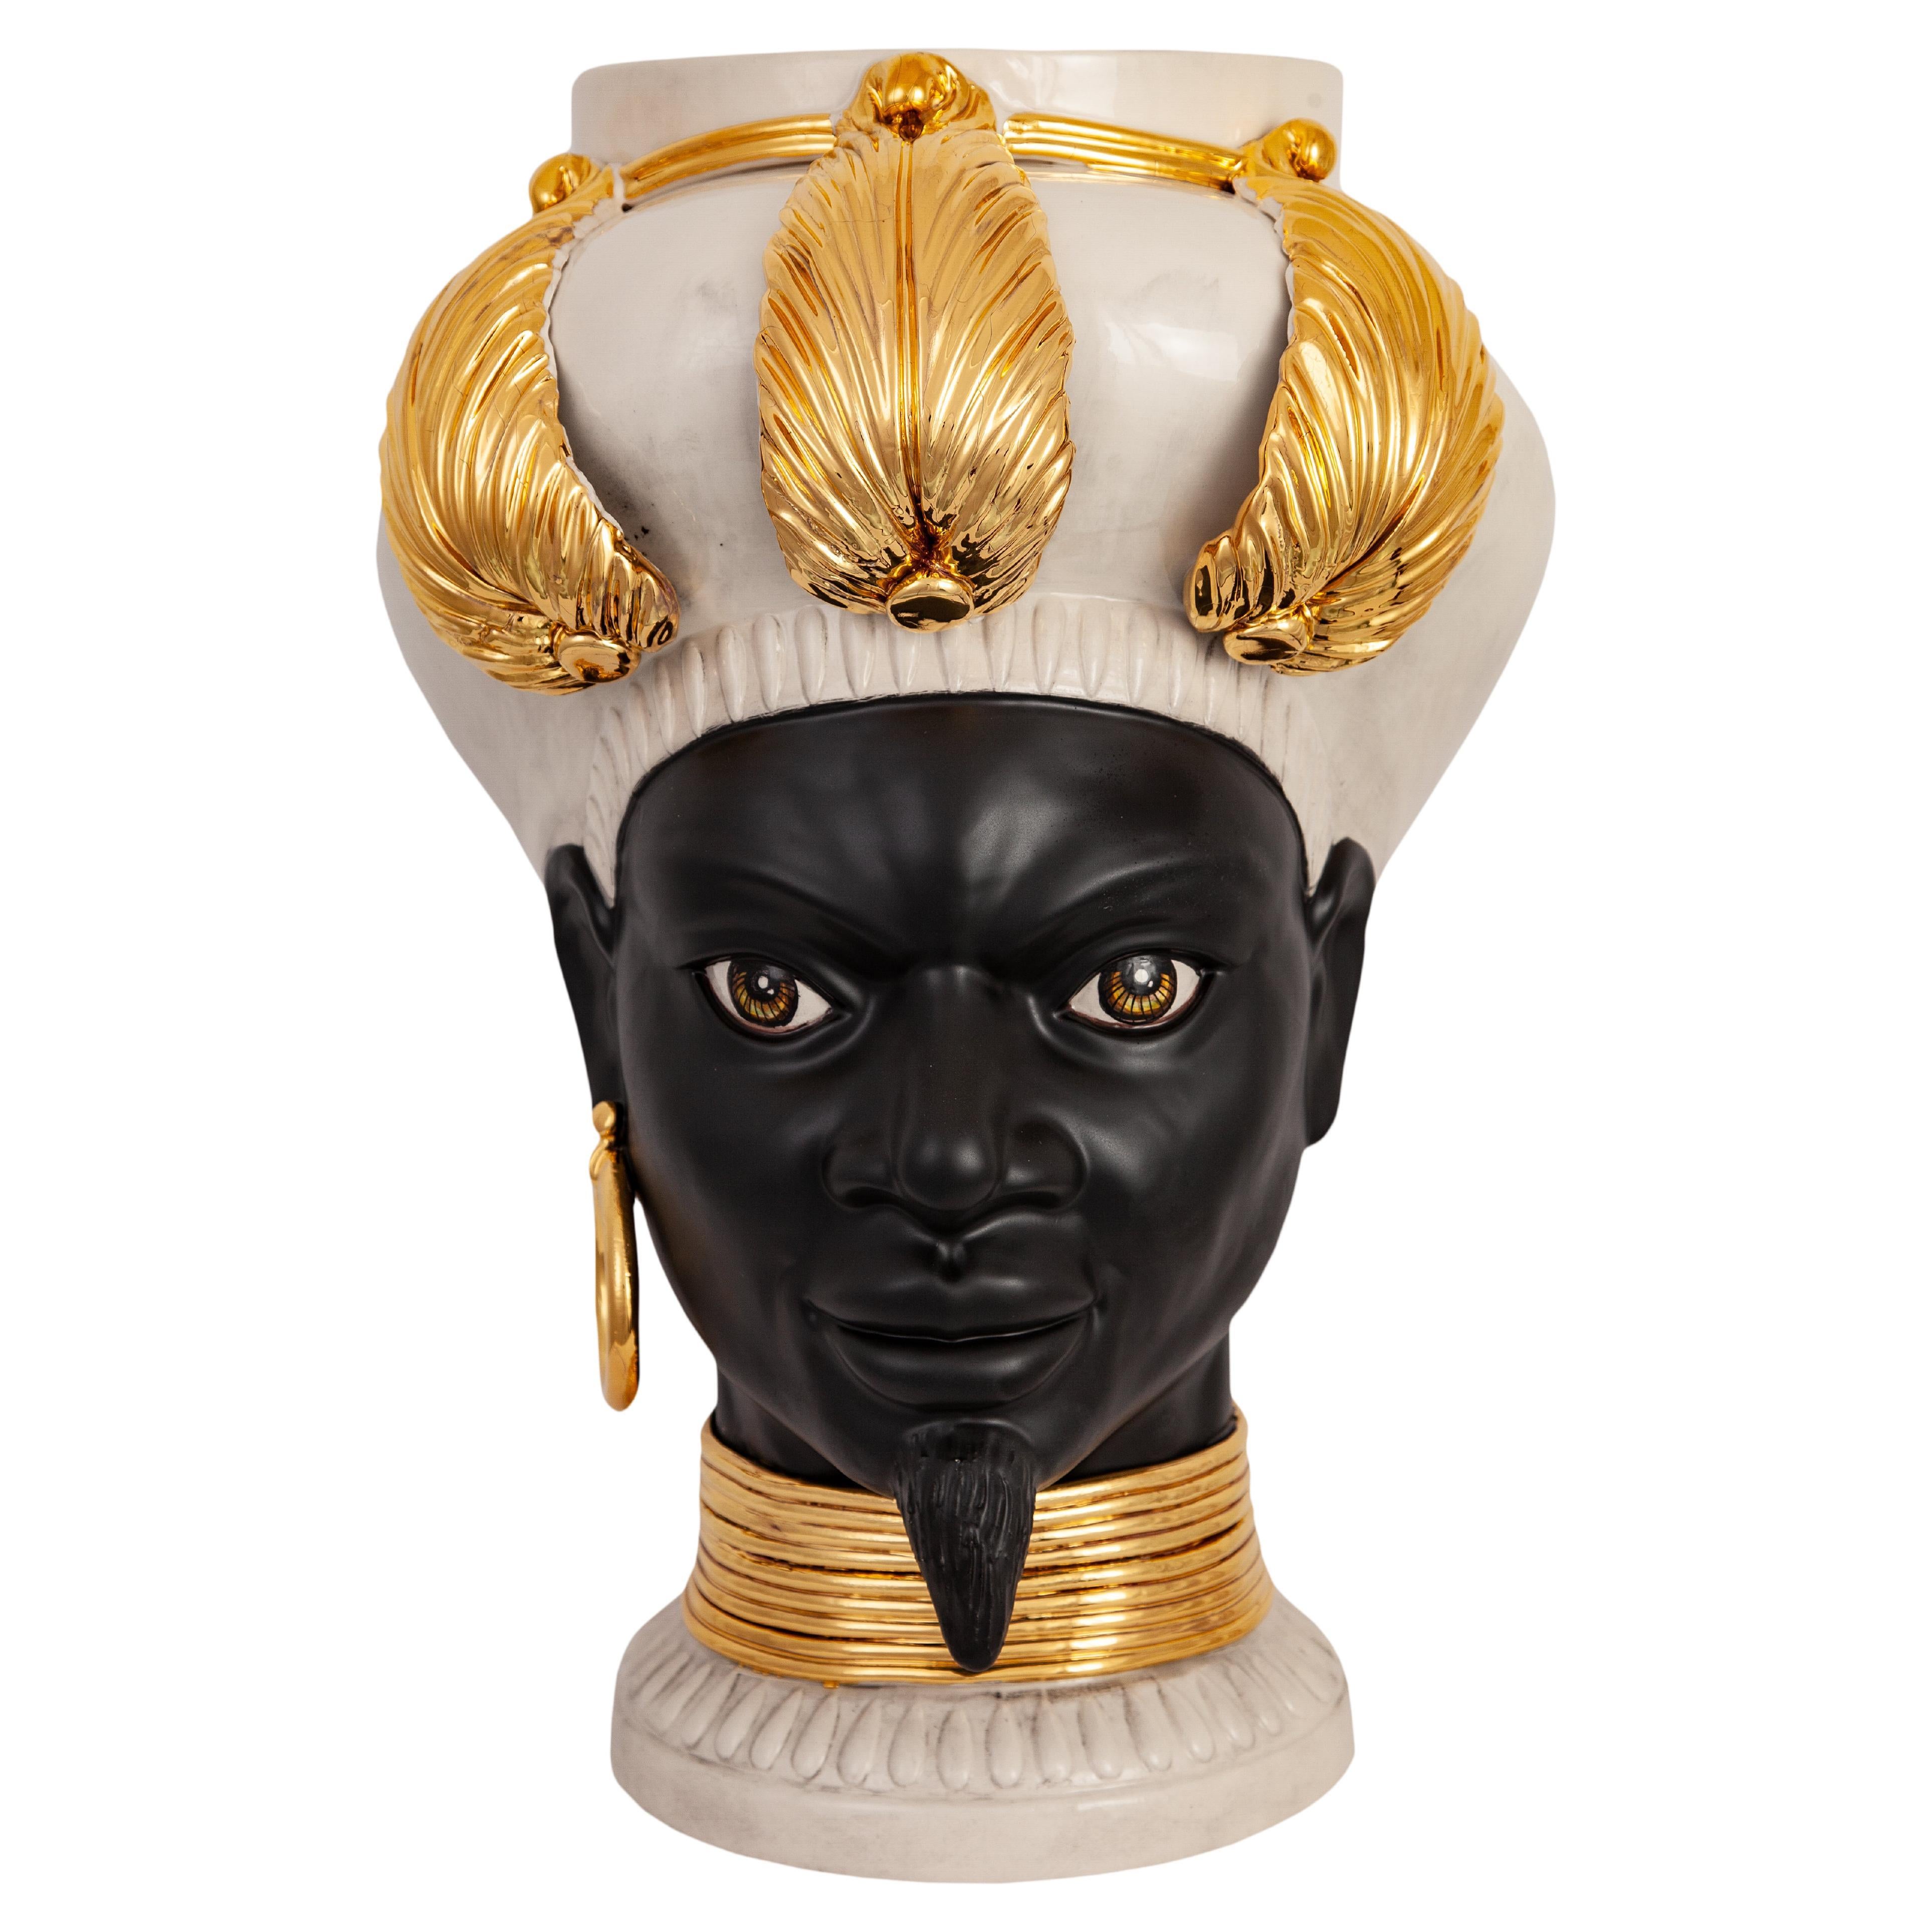 Iside I21, Man's Moorish Head, Handmade in Sicily, 2021, Golden, Size M